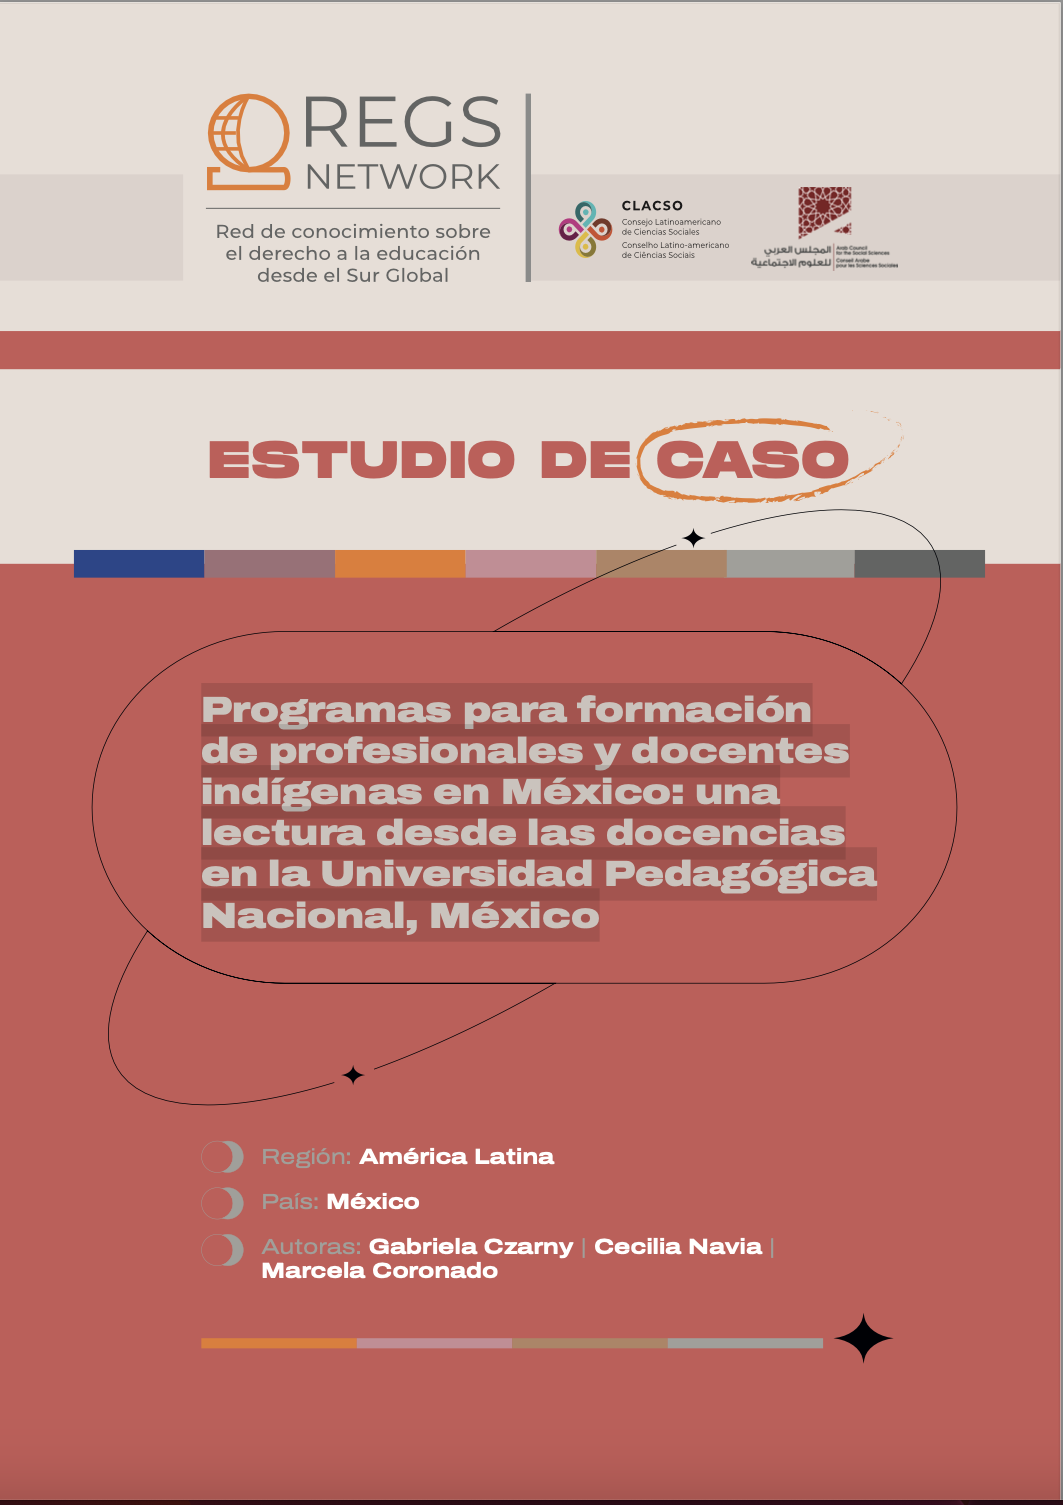 Programas para formación de profesionales y docentes indígenas en México: una lectura desde las docencias en la Universidad Pedagógica Nacional, México